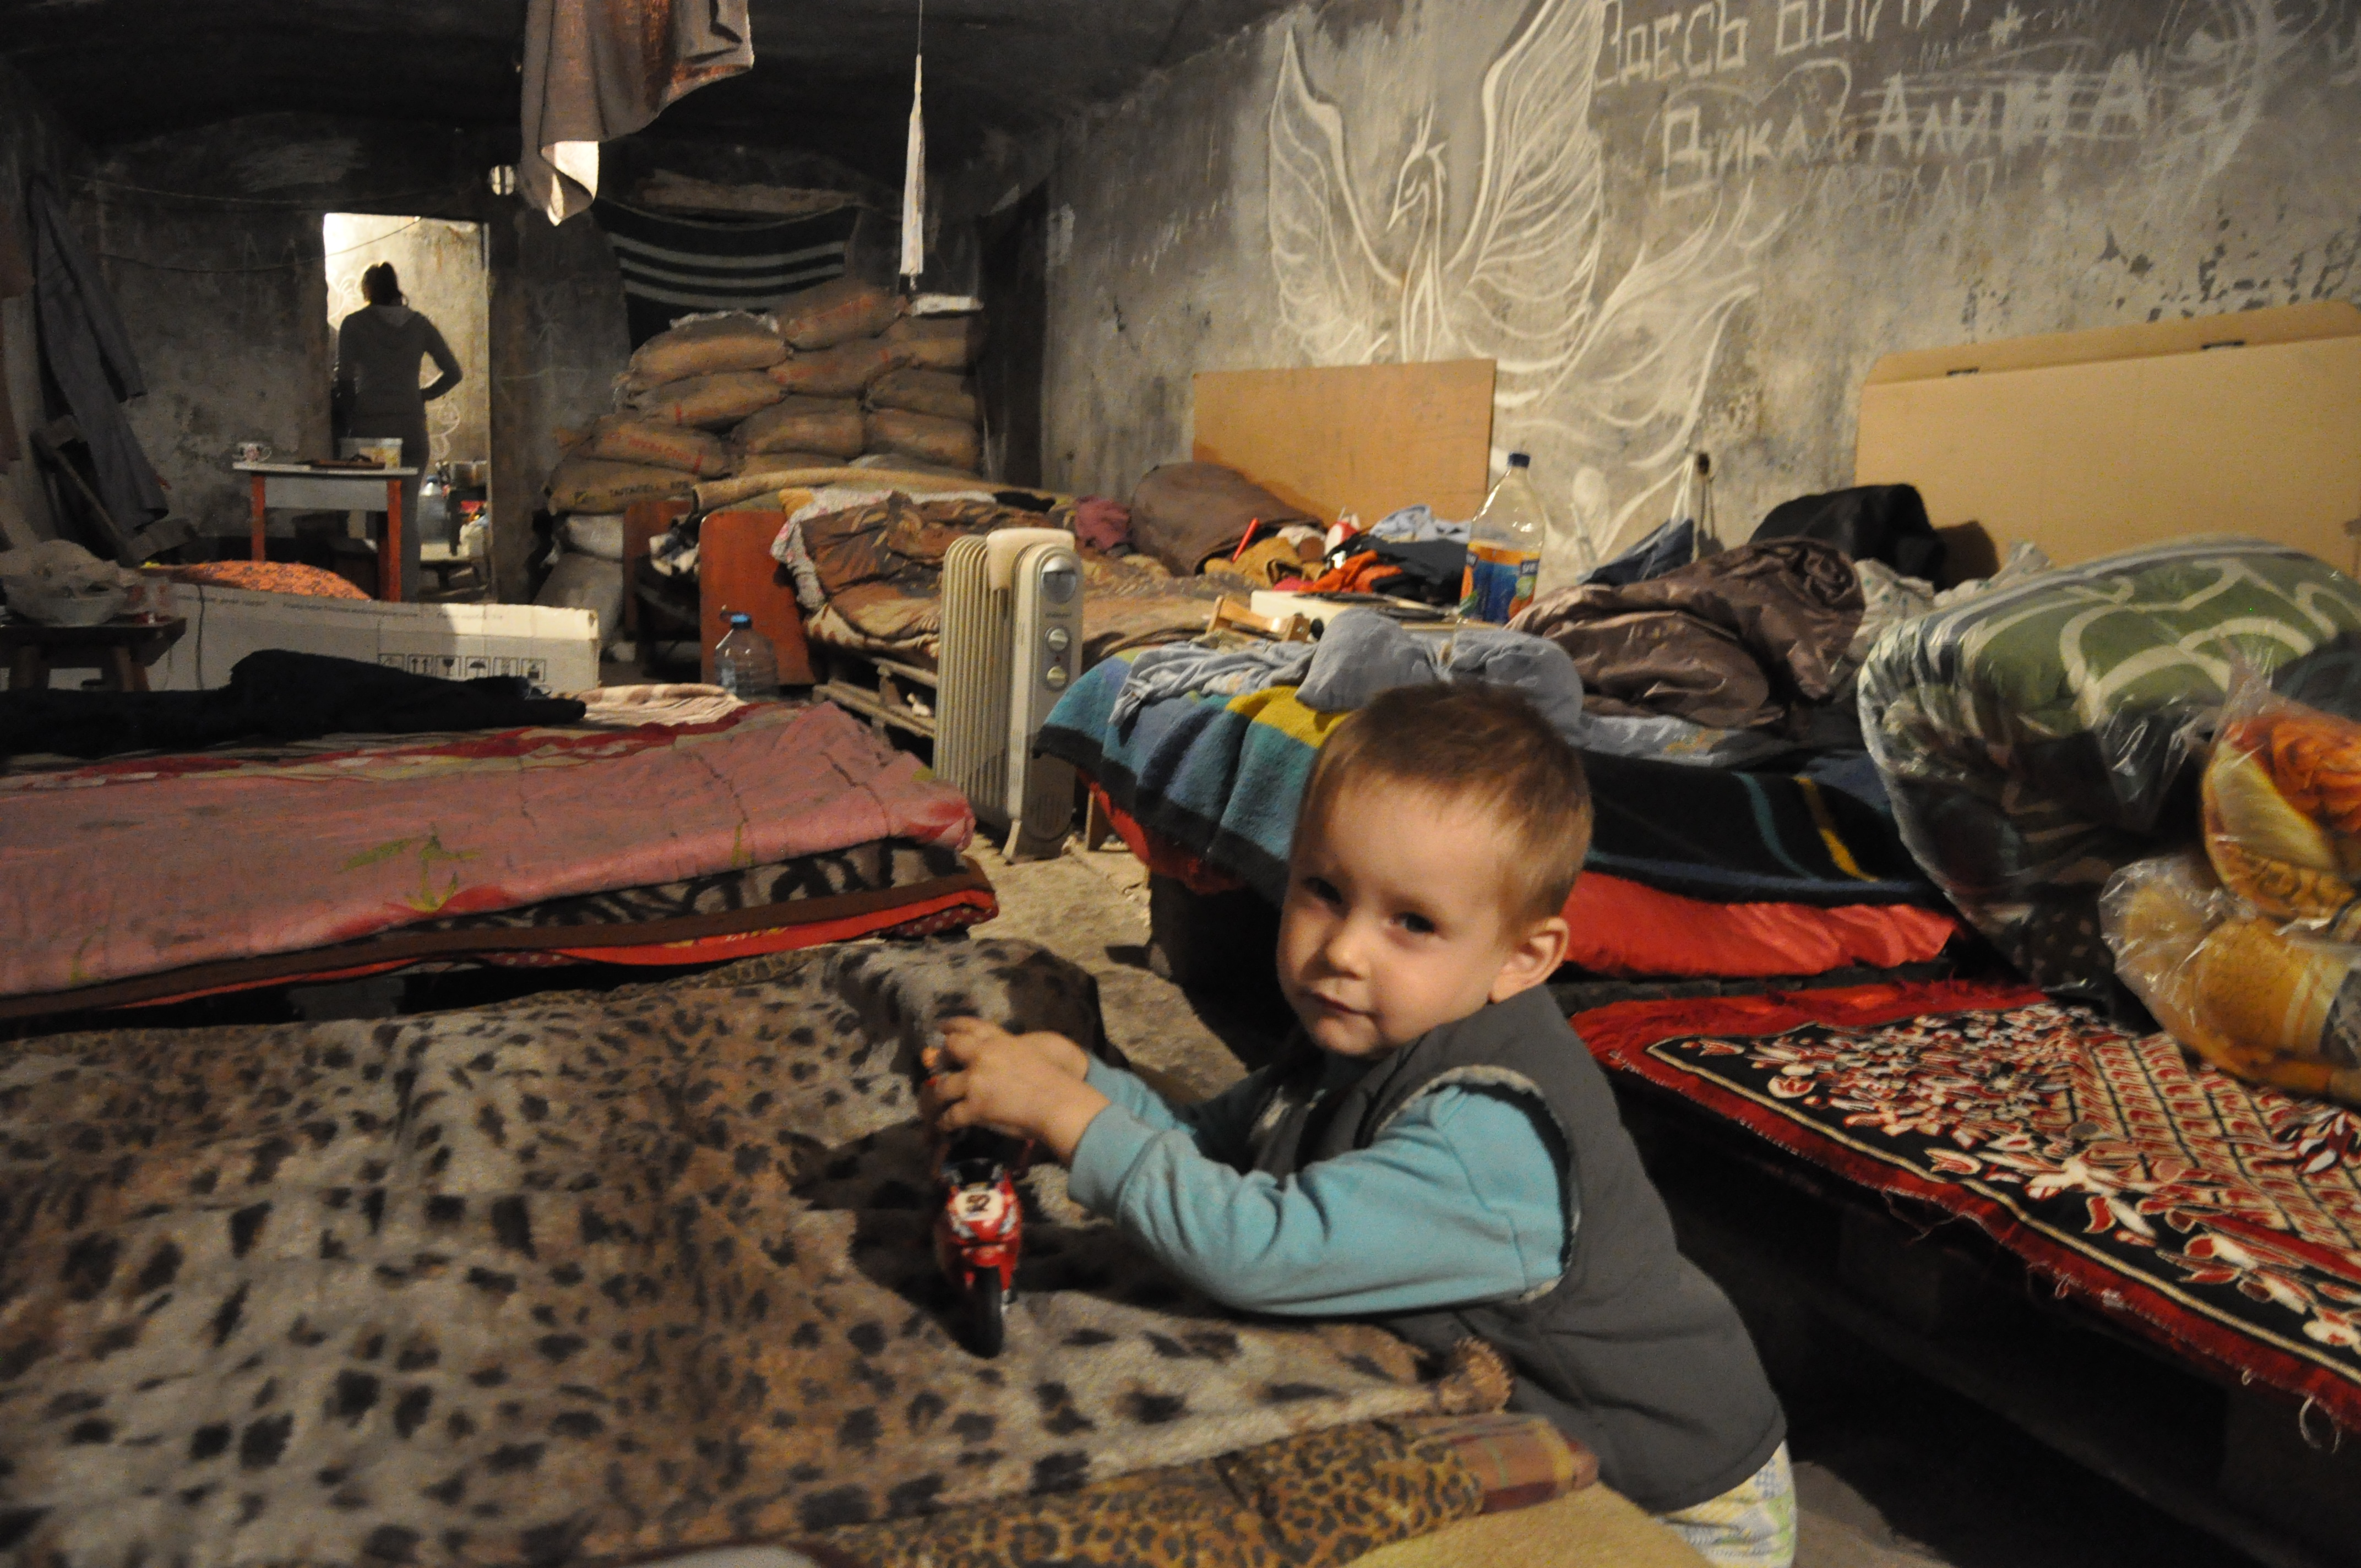 FOTO: Válka, která bere důstojnost. Podívejte se, jak žijí lidé na Donbase